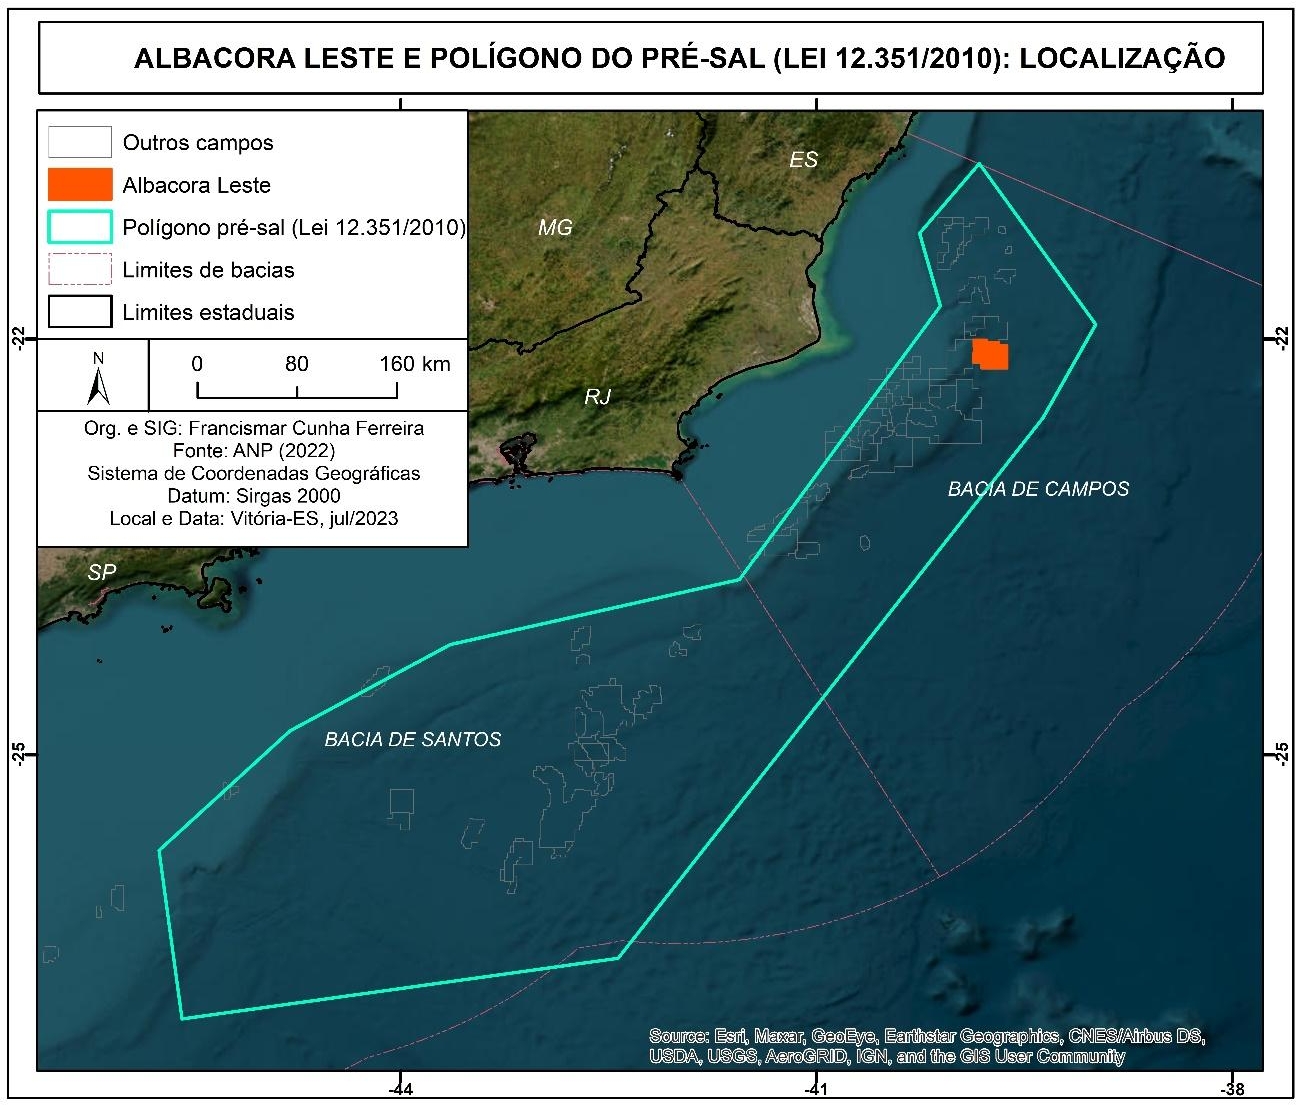  Localização do campo Albacora Leste e do polígono do pré-sal (Lei 12.531/2010).